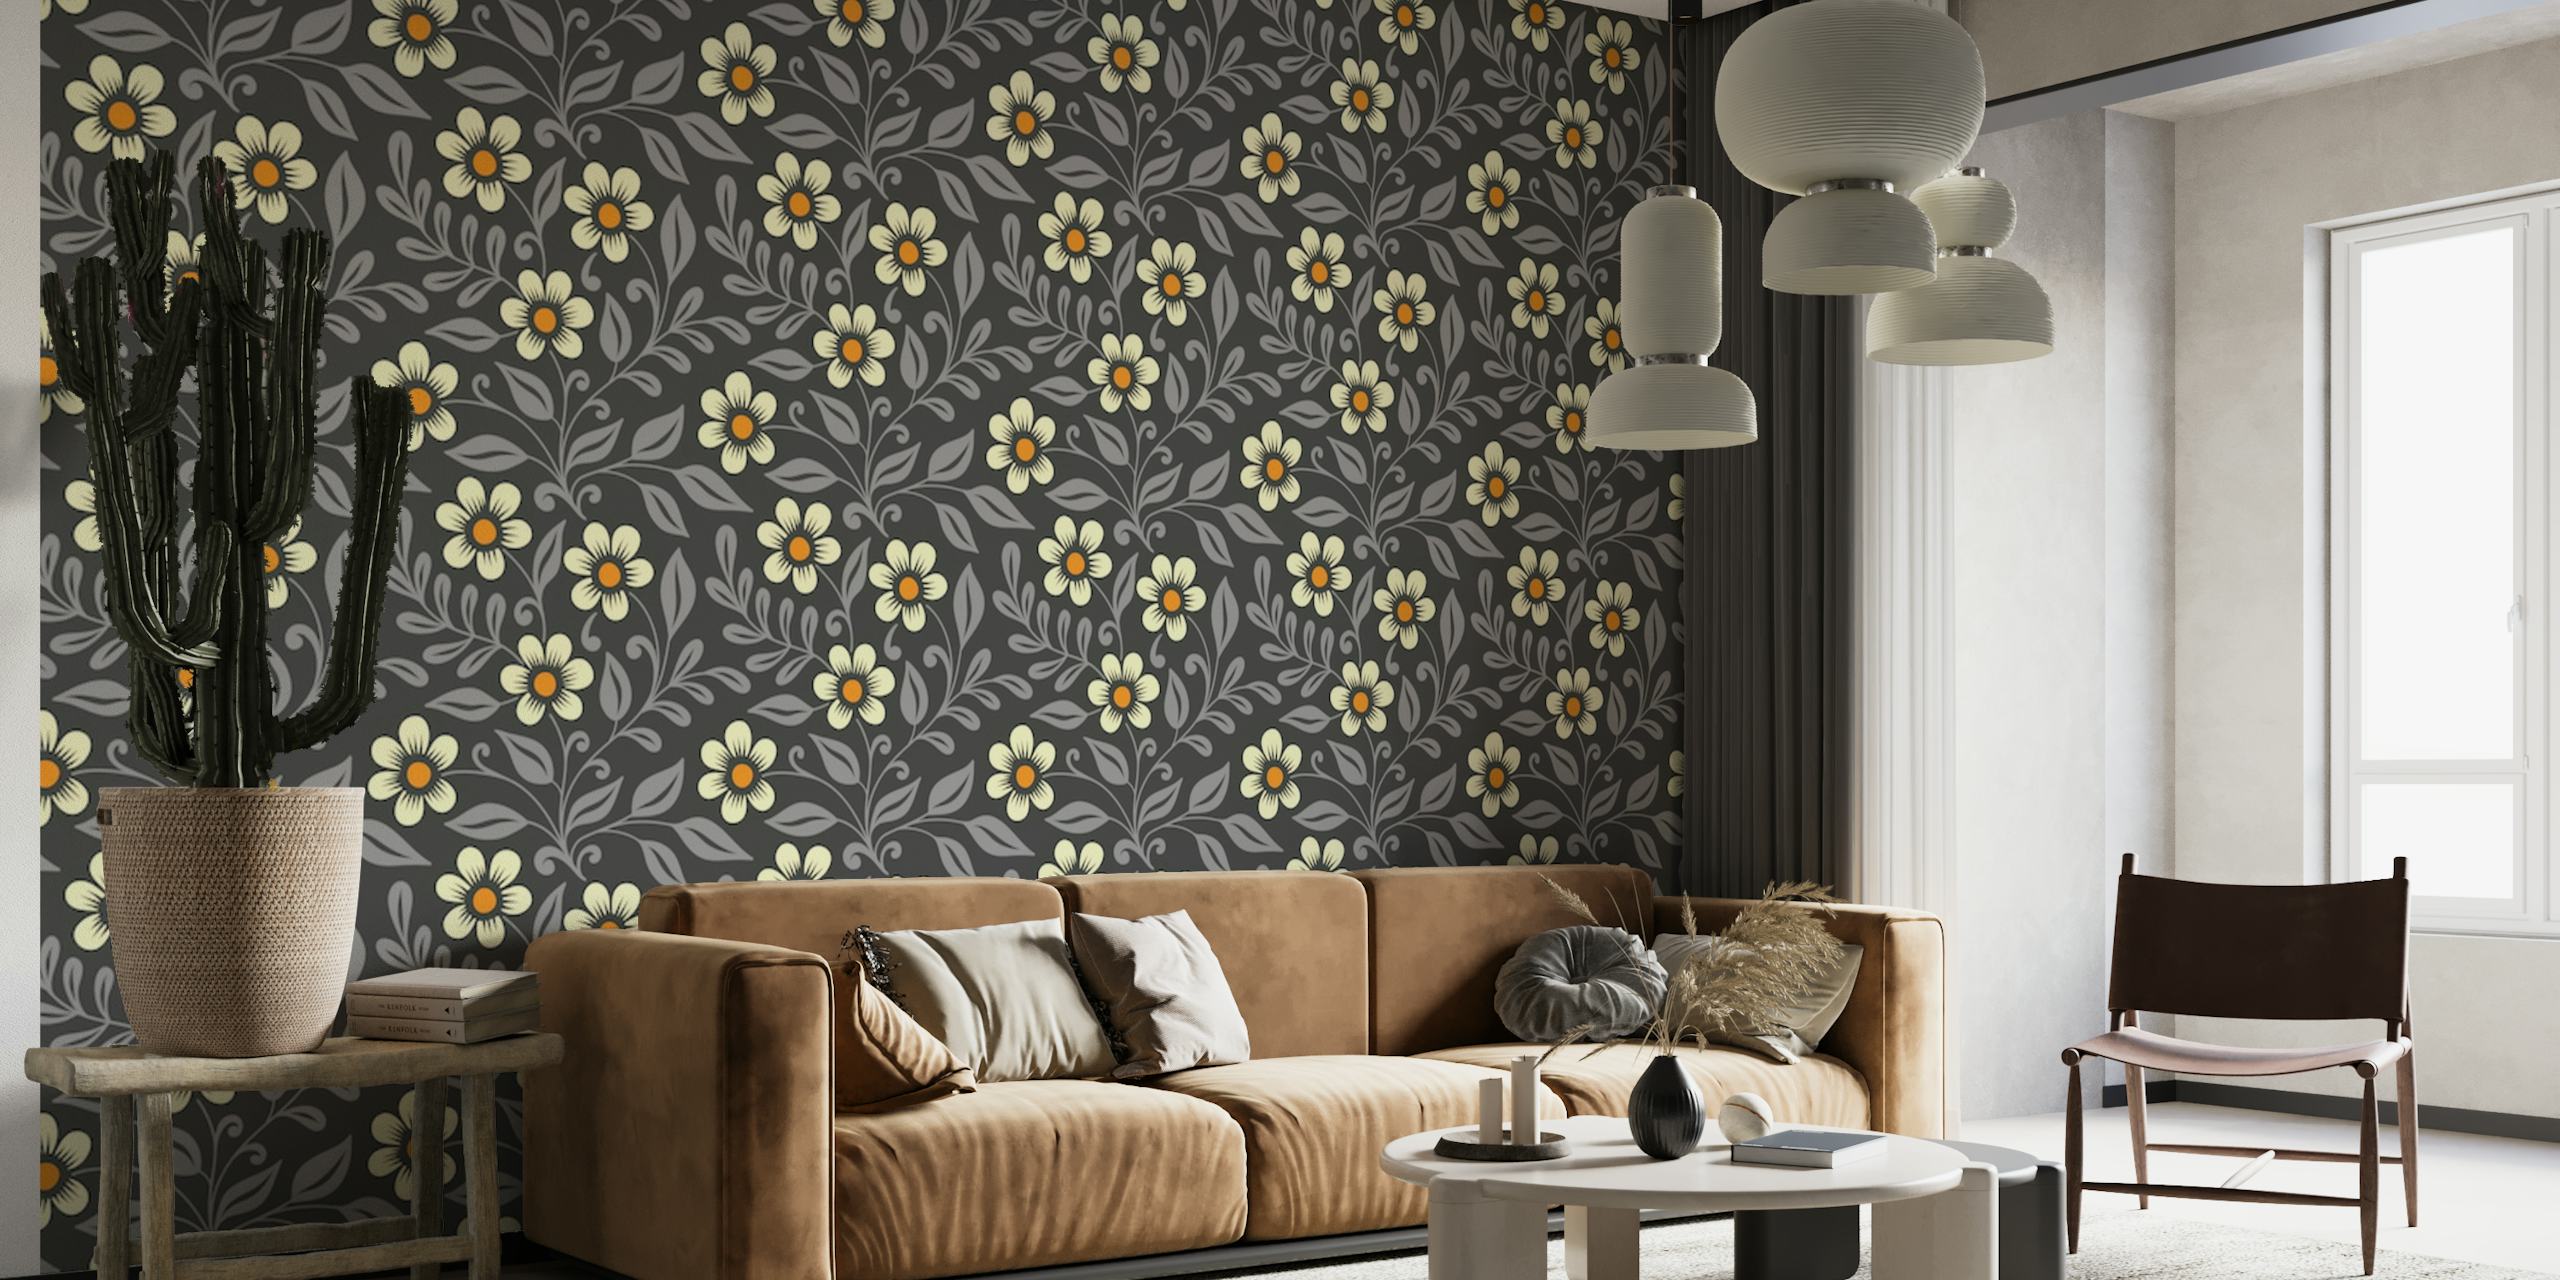 Charmante muurschildering met ditsy bloemmotief met kleine bloemen op een grijze achtergrond